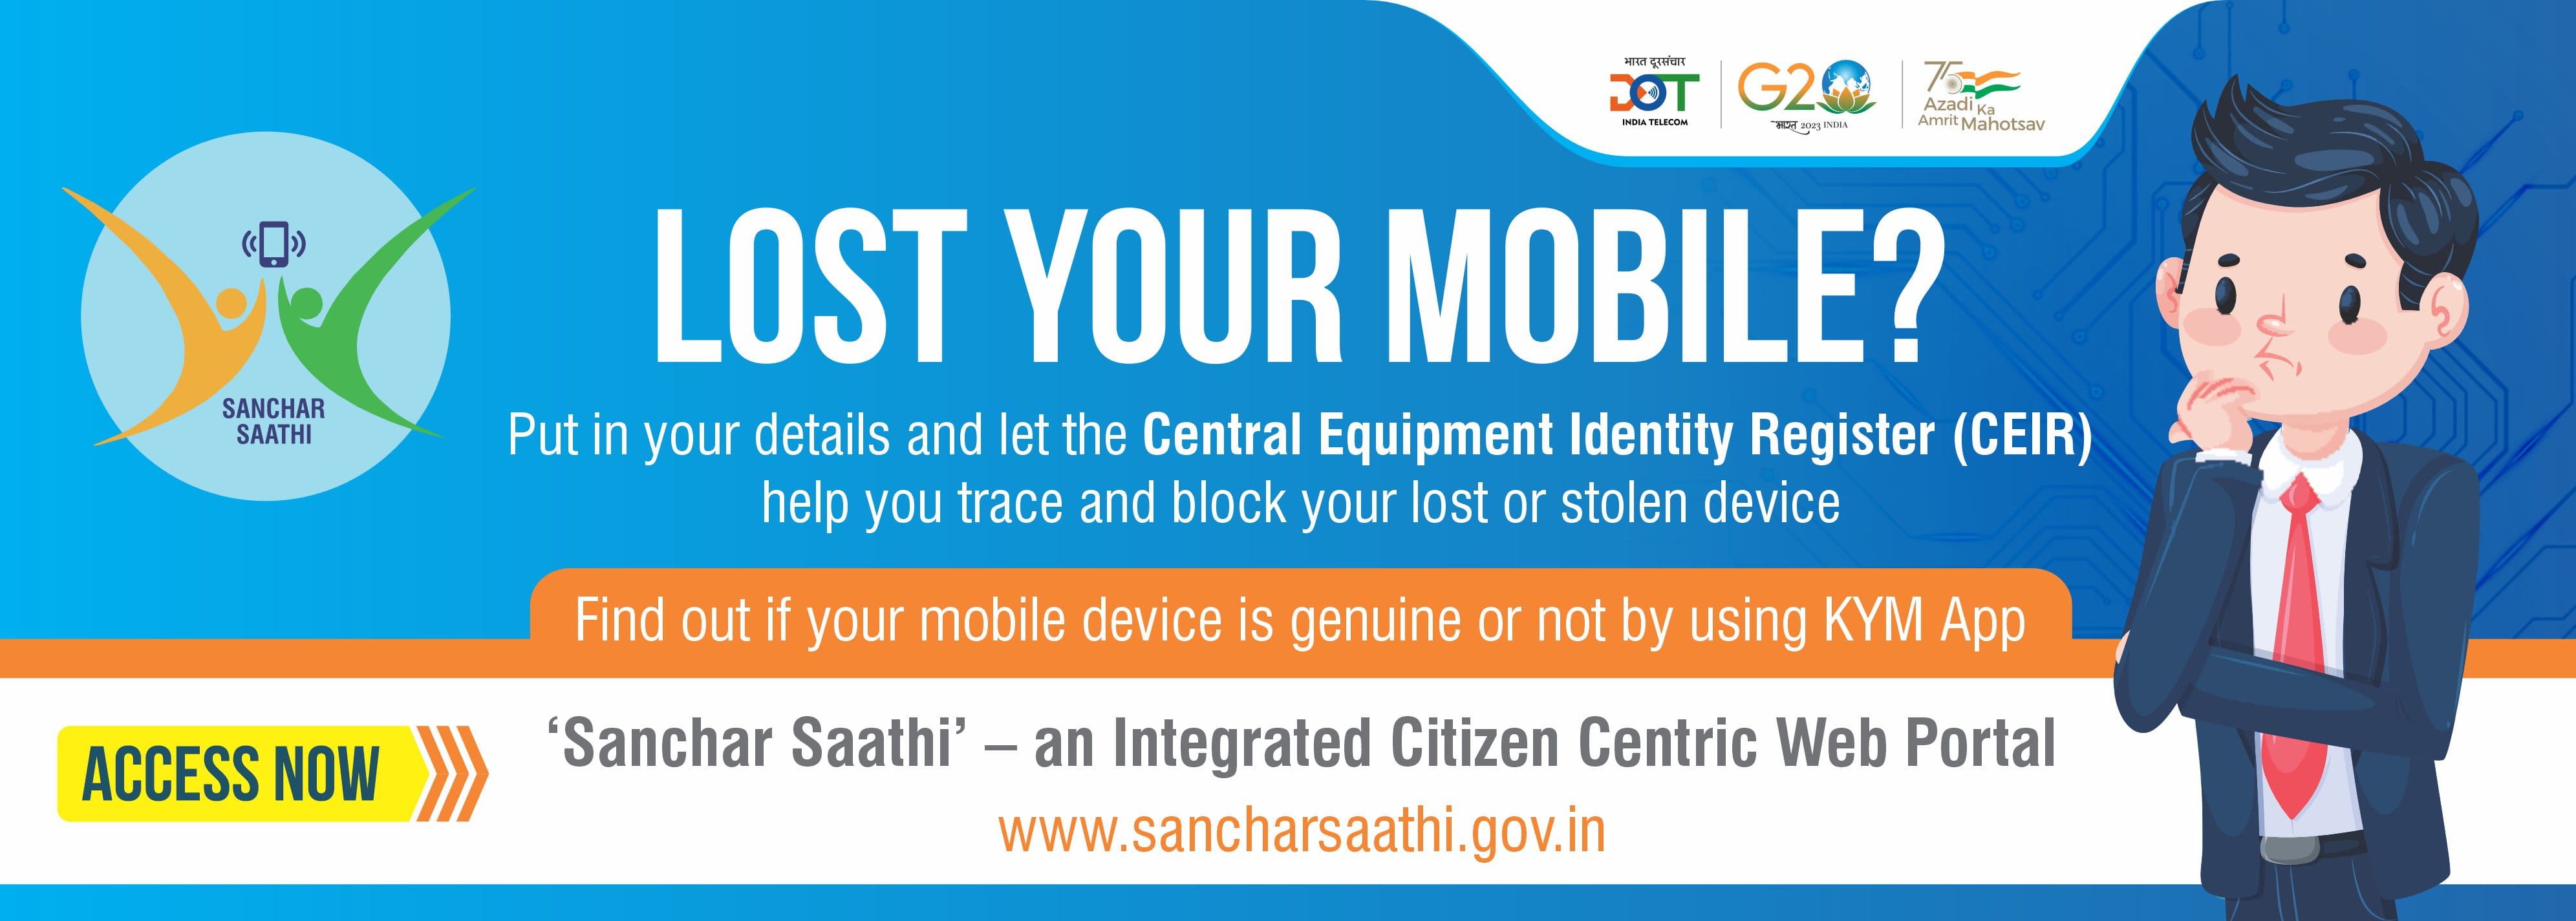 Sanchar Saathi गुम हो गया है स्मार्टफोन तो तुरंत करें ये काम सरकार के इस  पोर्टल के जरिए हर चीज होगी आसान - Sanchar Saathi Portal How To Track And  Block Lost